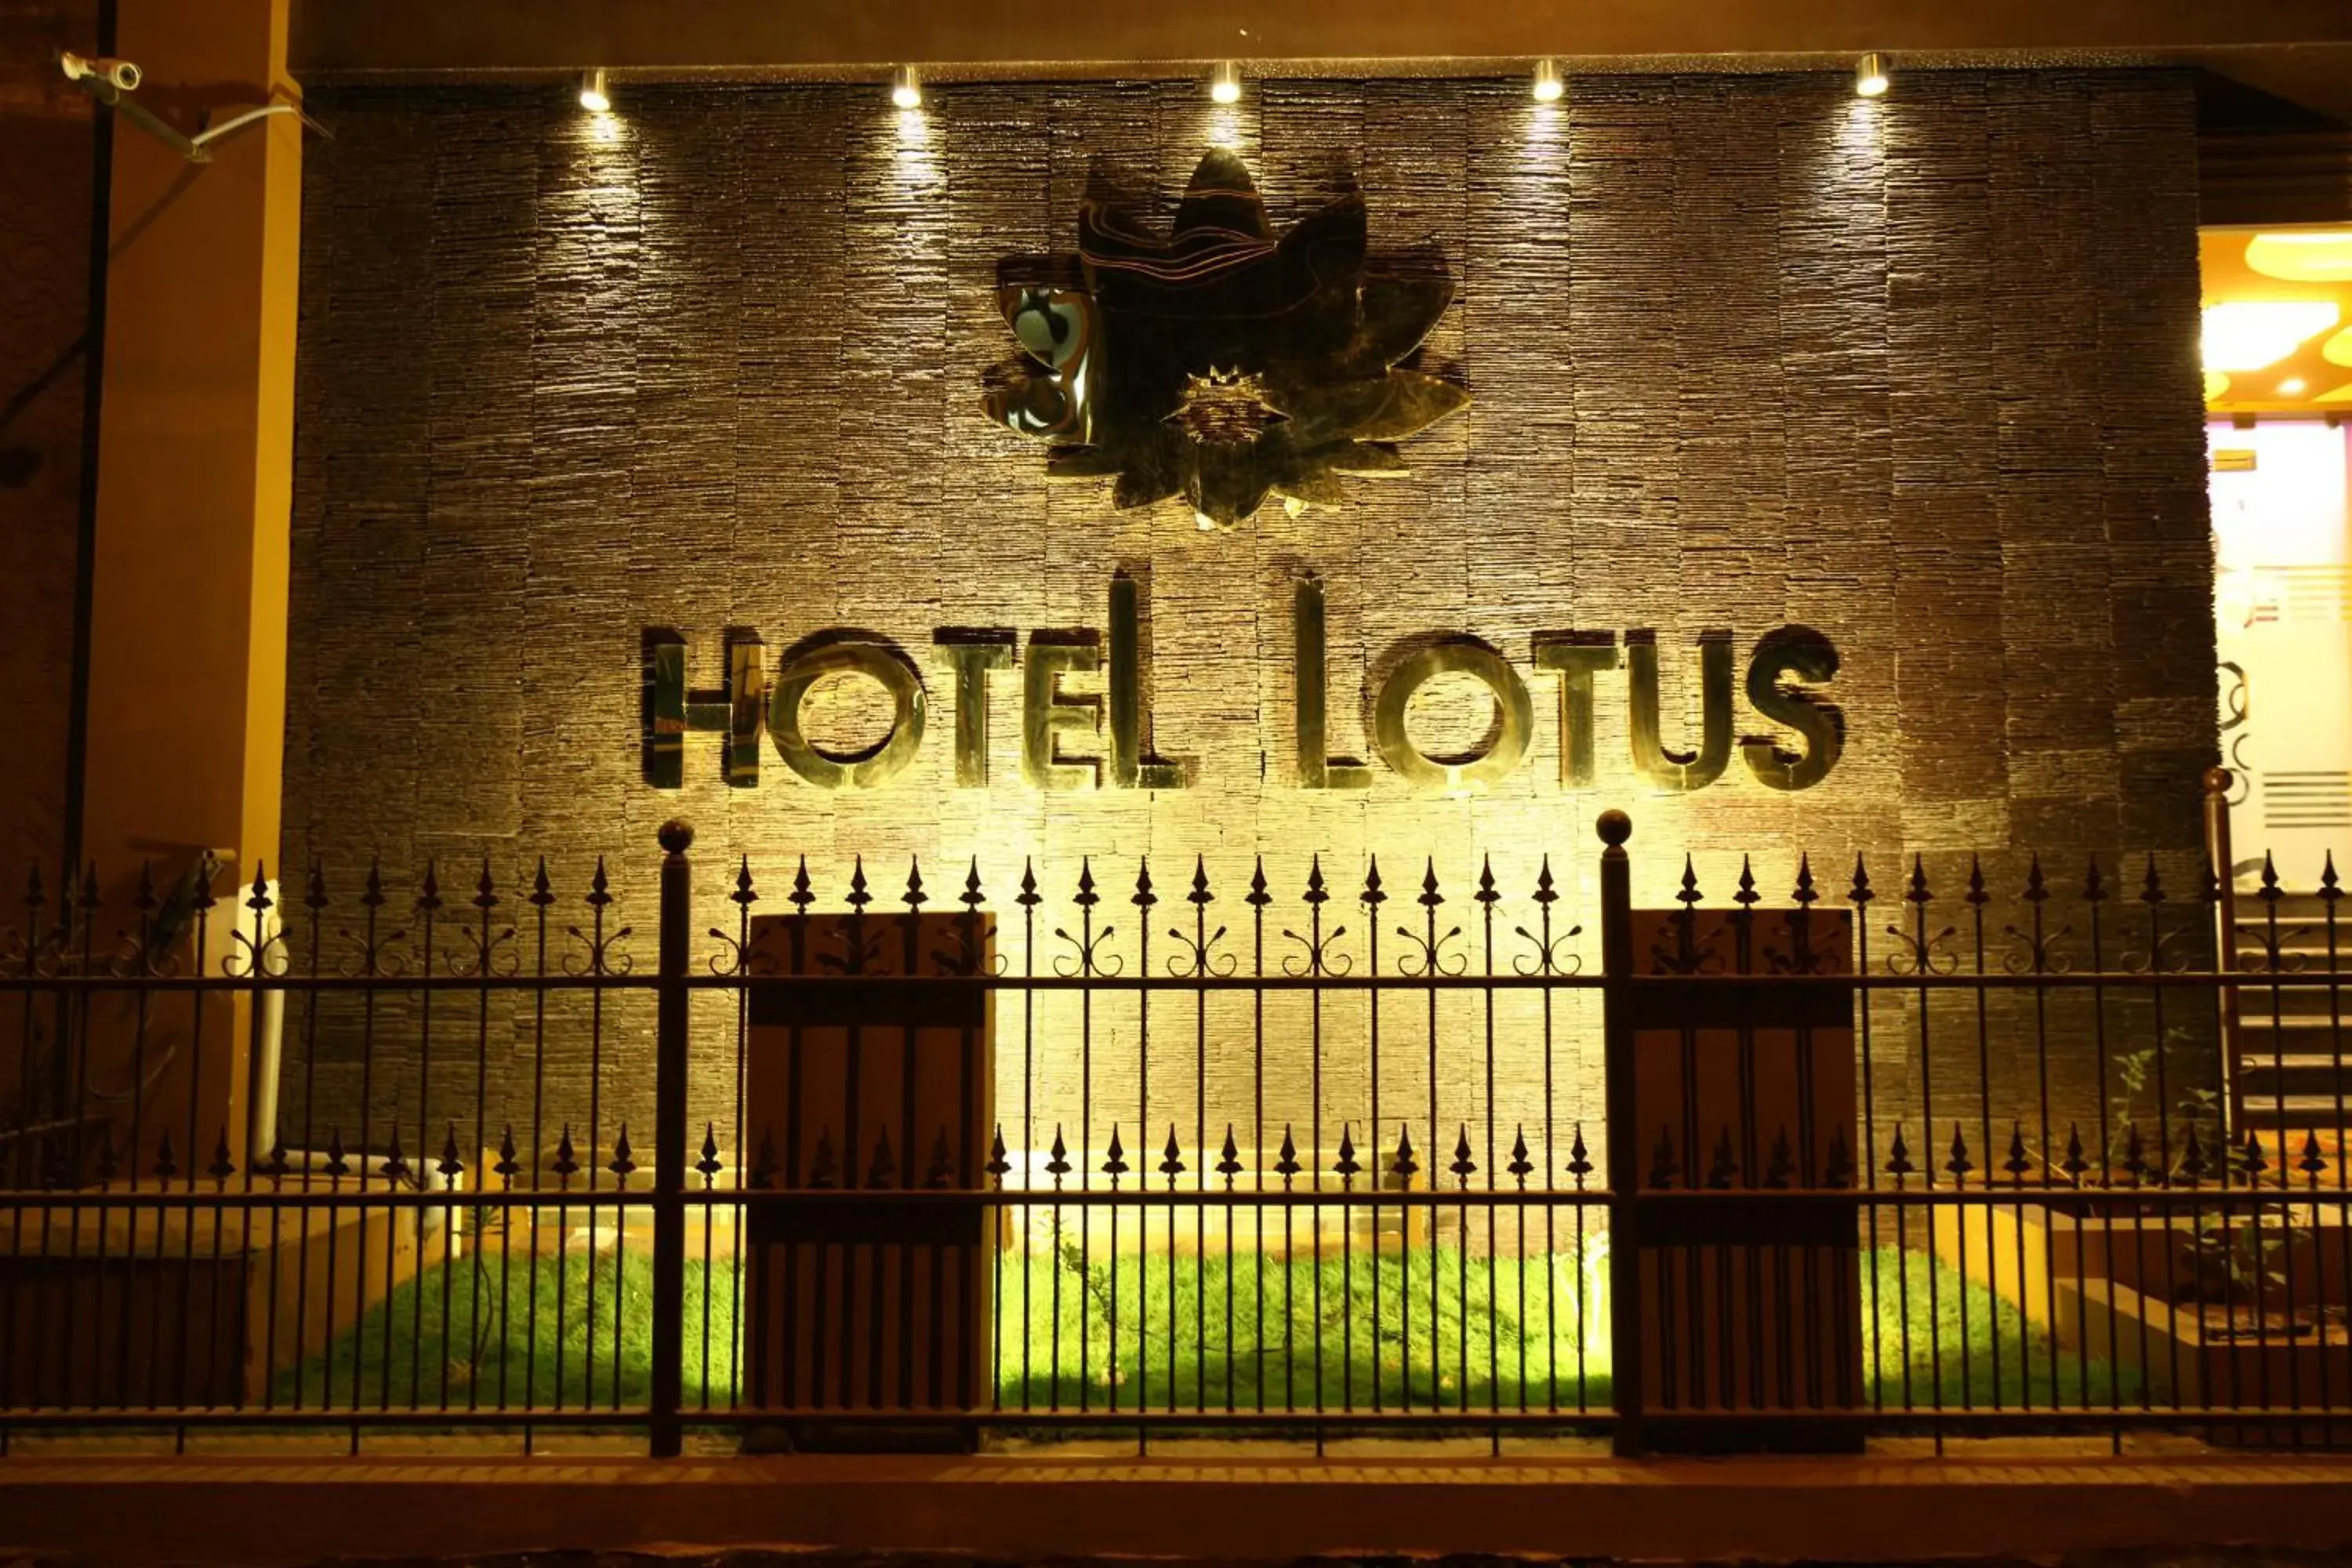 Facade/entrance in Hotel Lotus